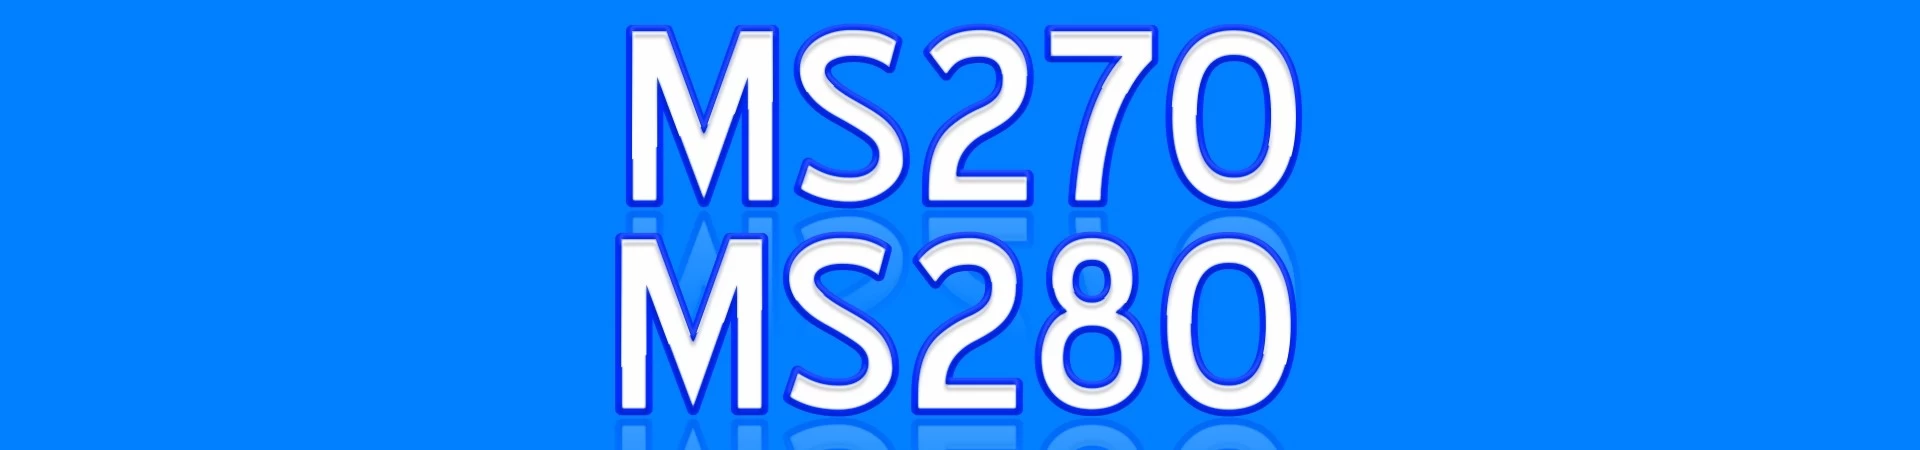 MS270 MS280